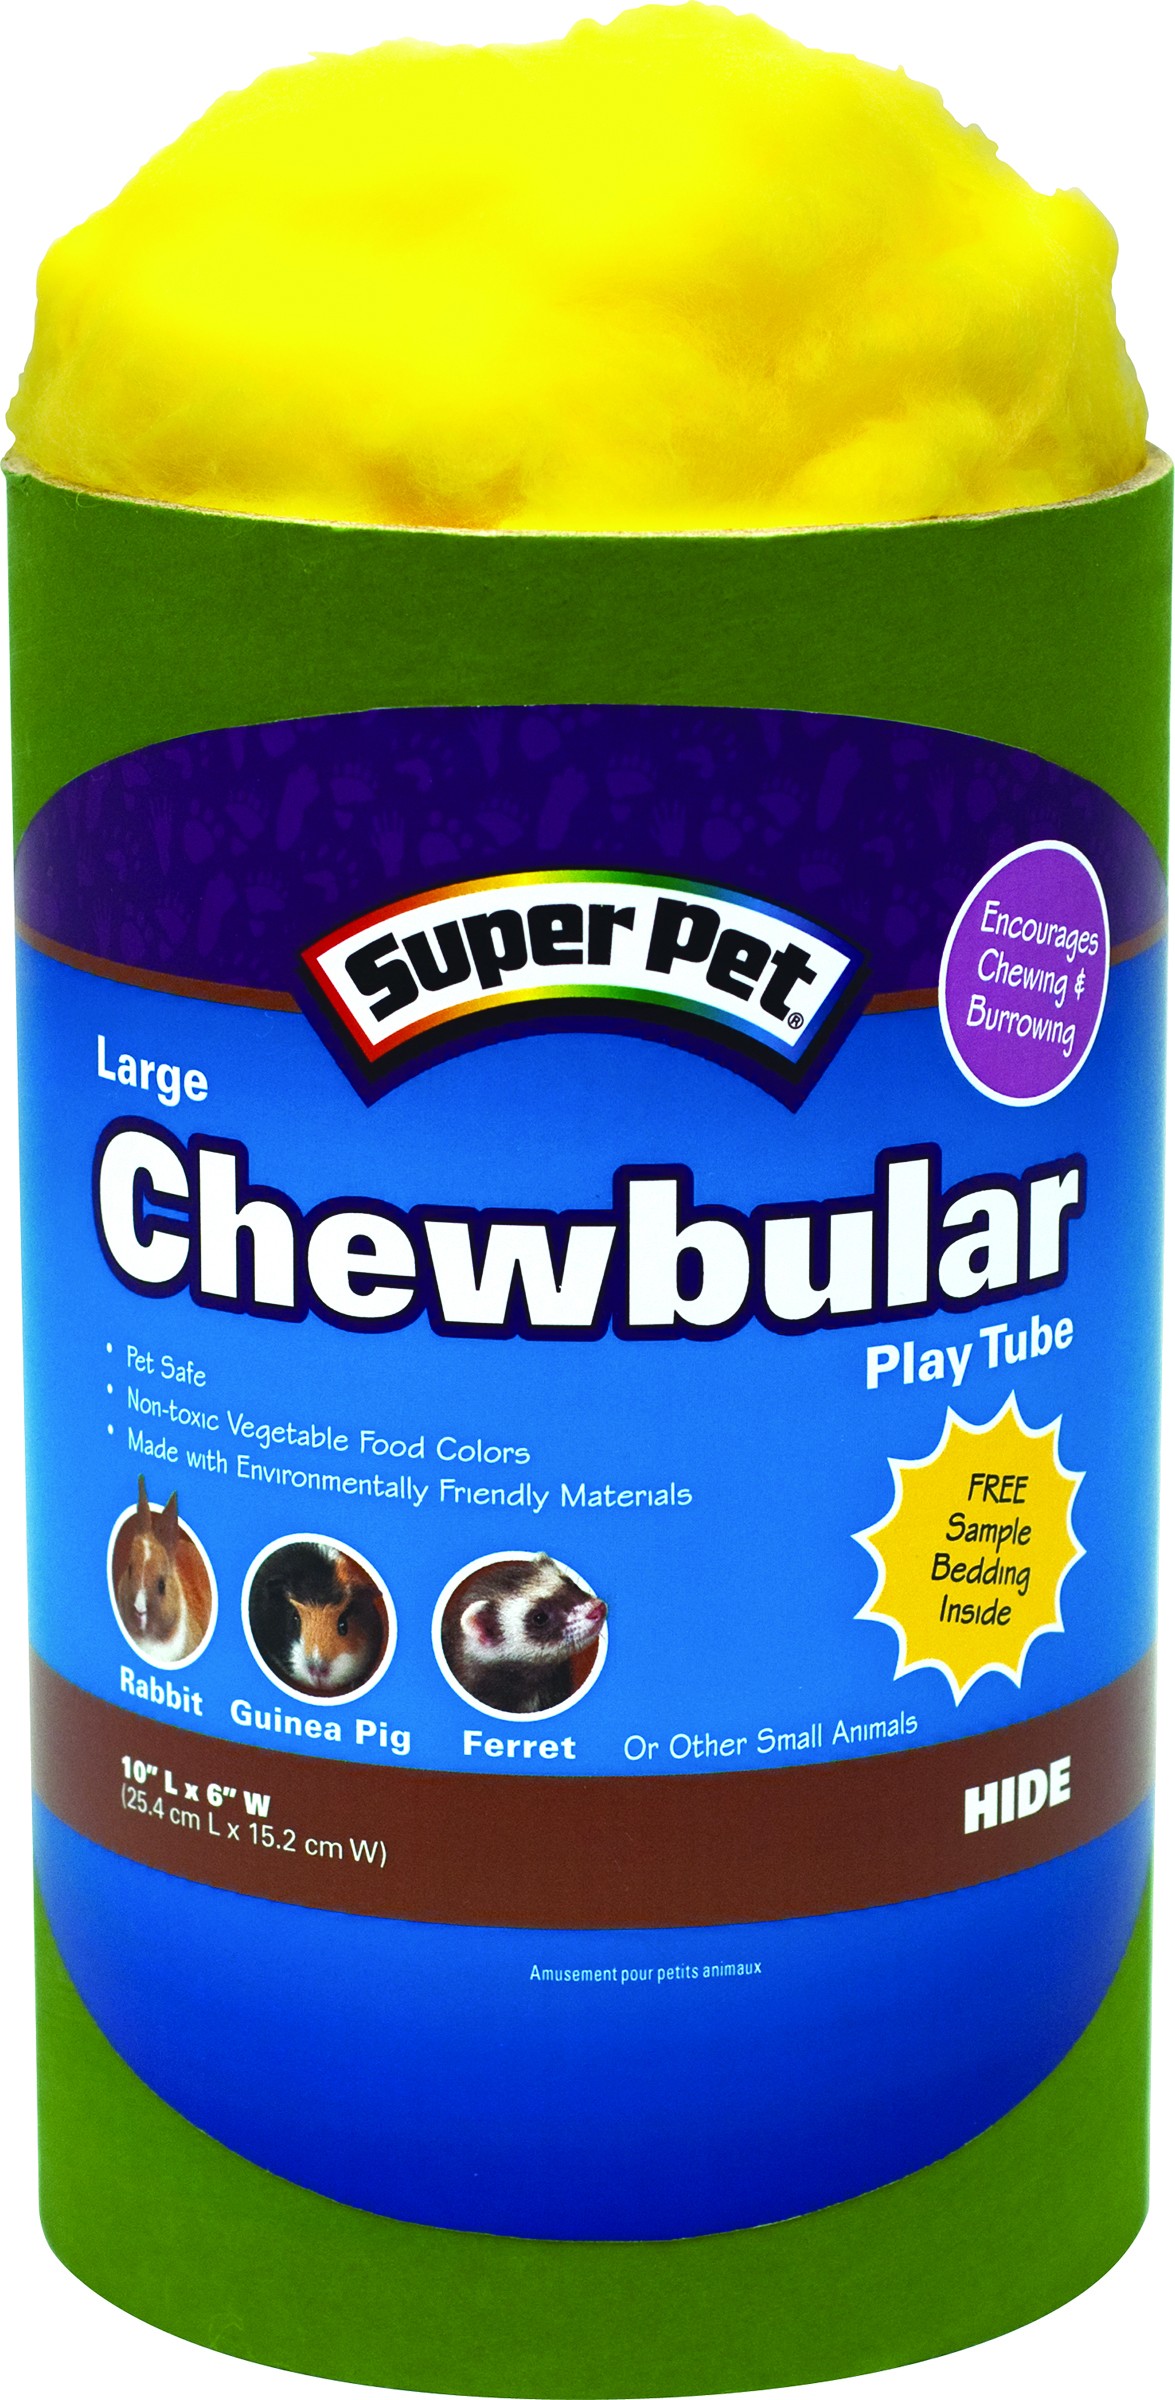 Chewbular Play Tube - Large